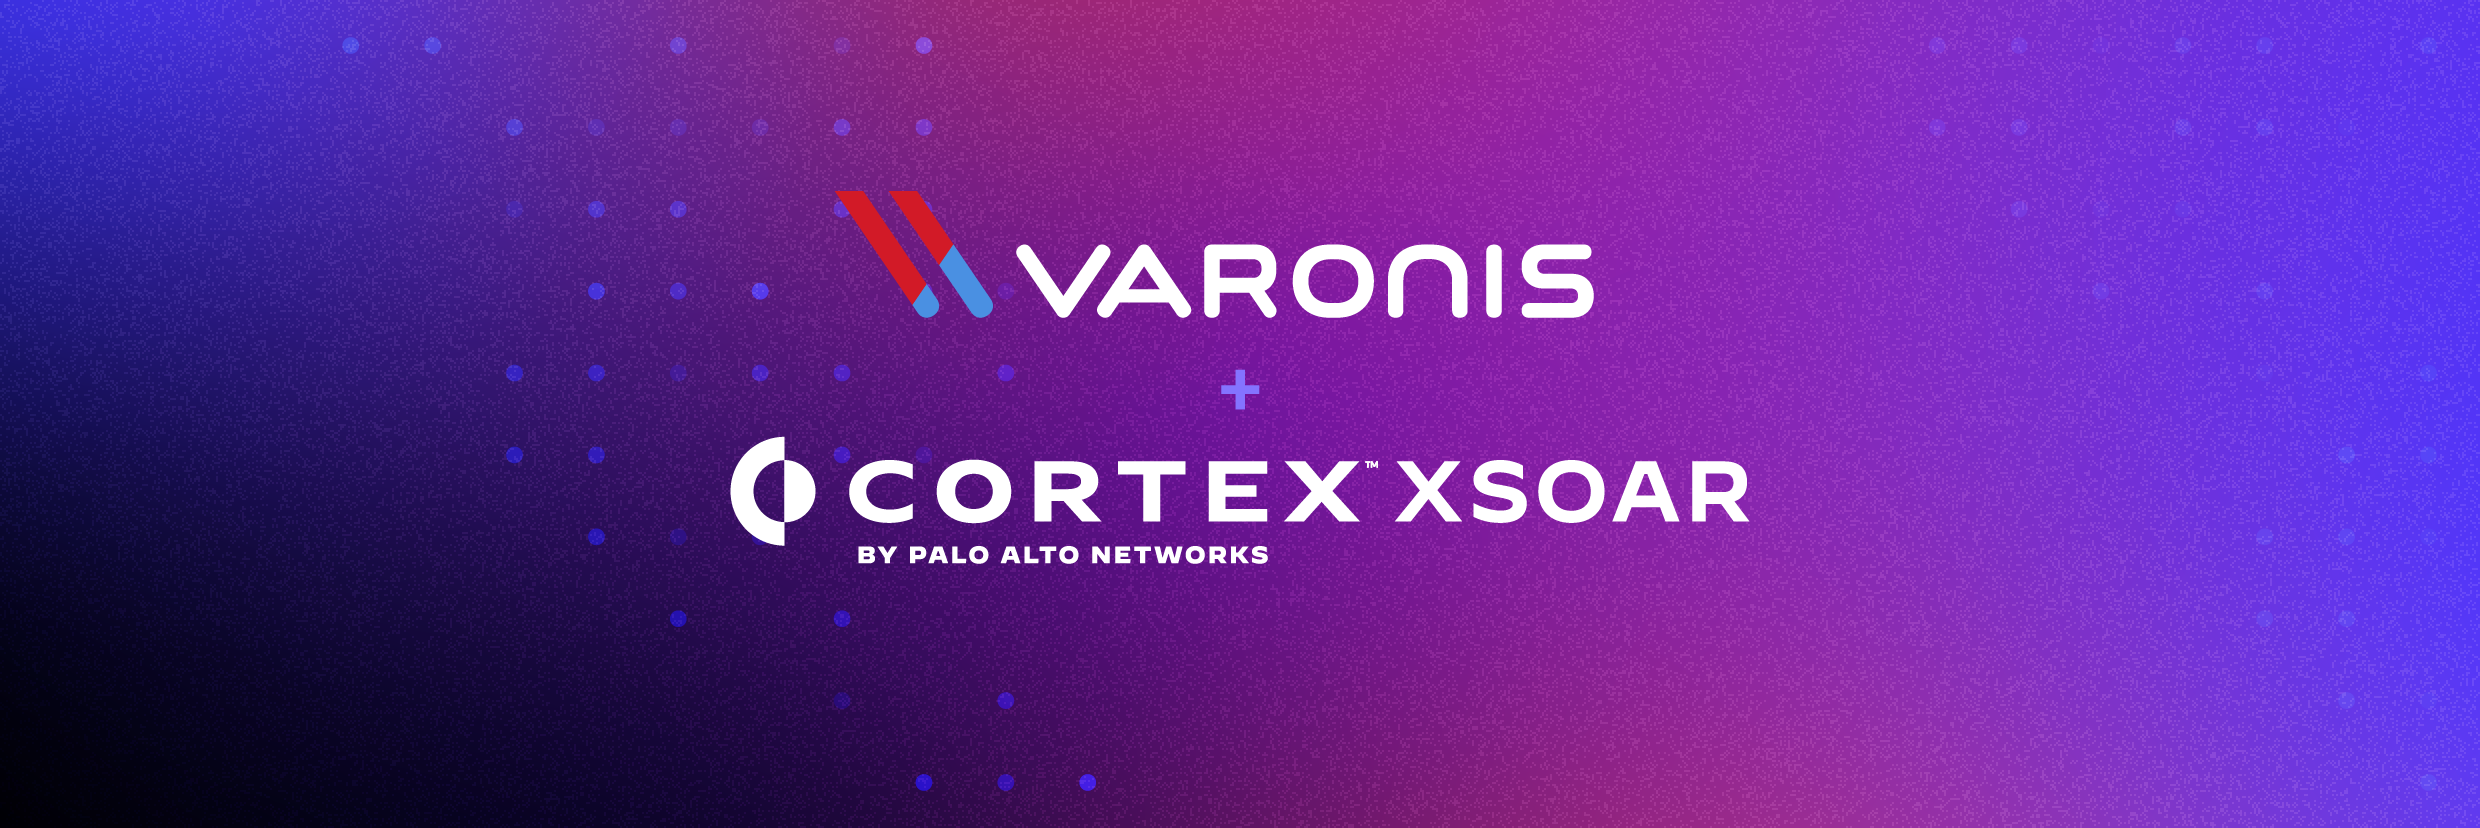 Varonis and Coretx XSOAR